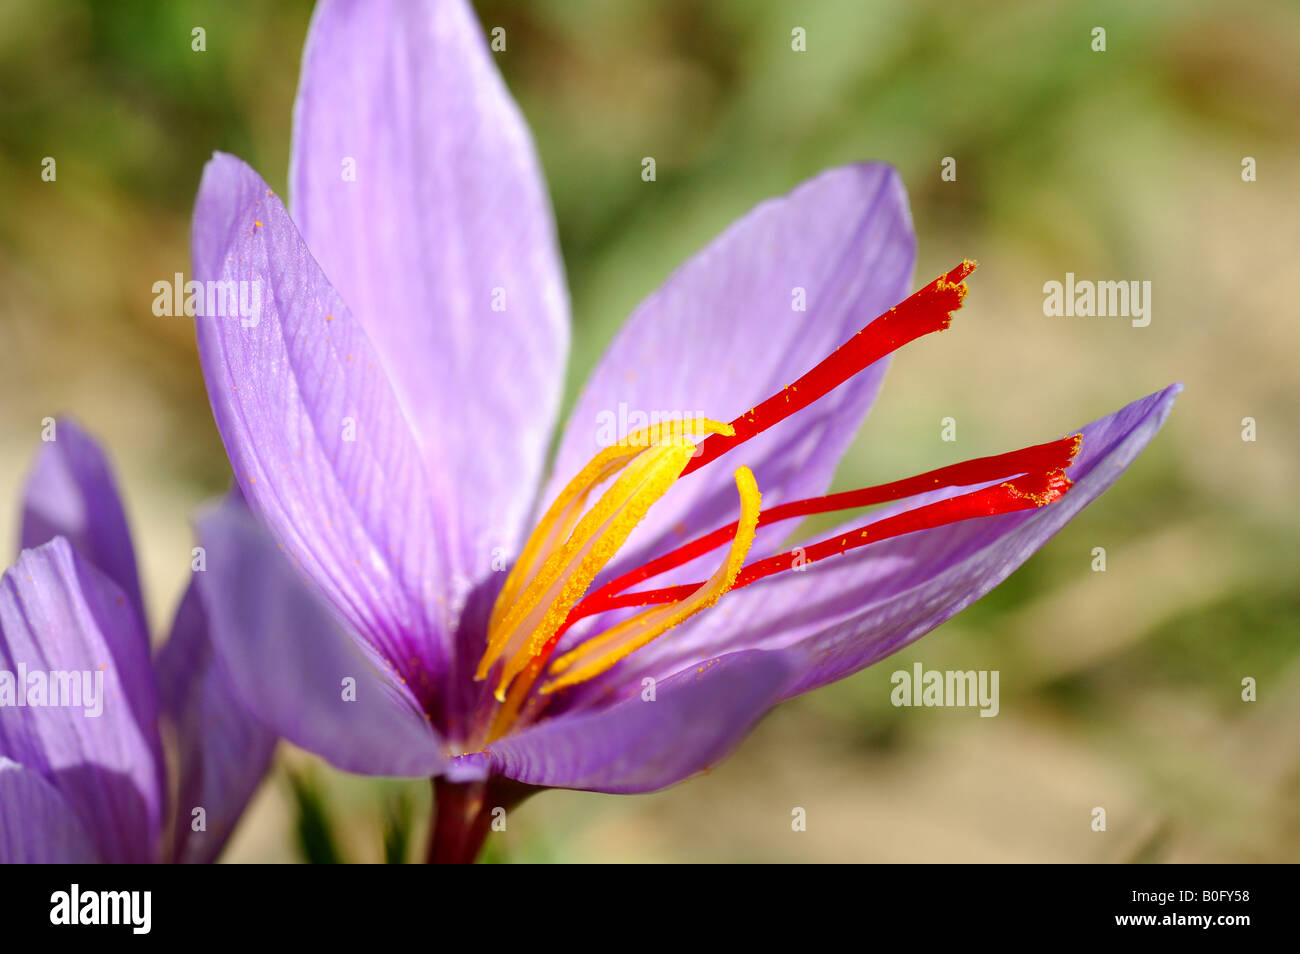 Autumn Crocus Saffron flower Crocus sativus Mund Valais Switzerland Stock Photo